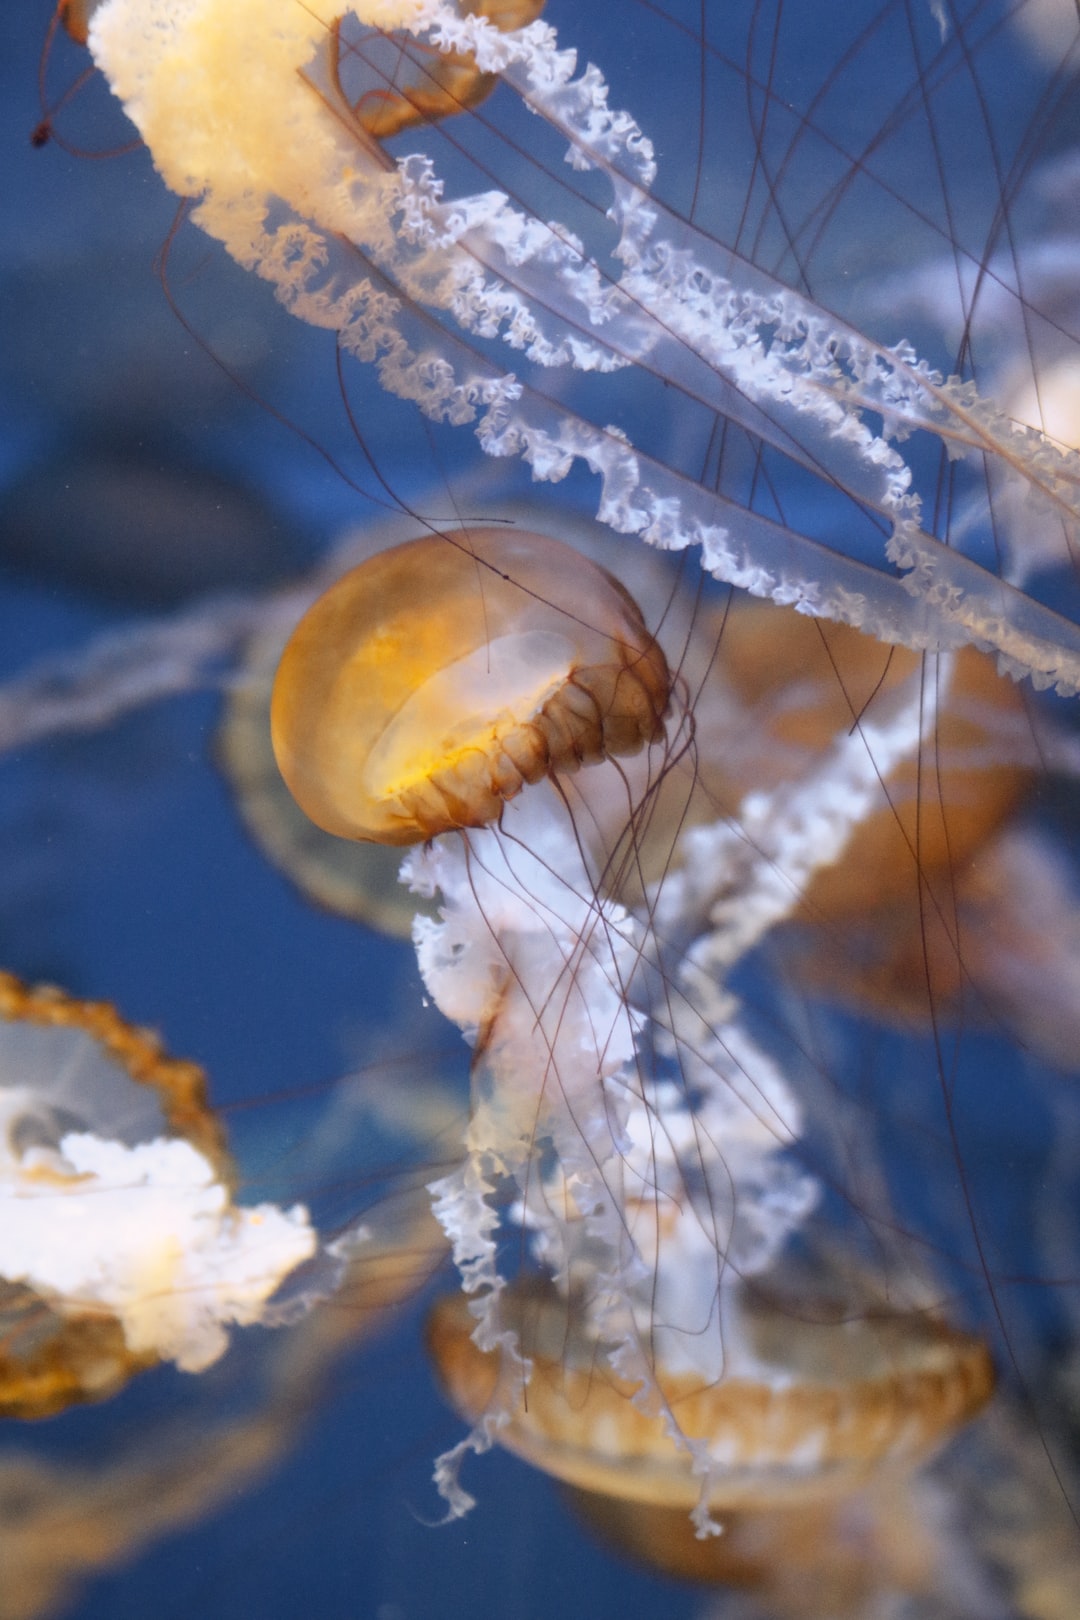 25 wichtige Fragen zu Wie Esse Ich Oktopus?